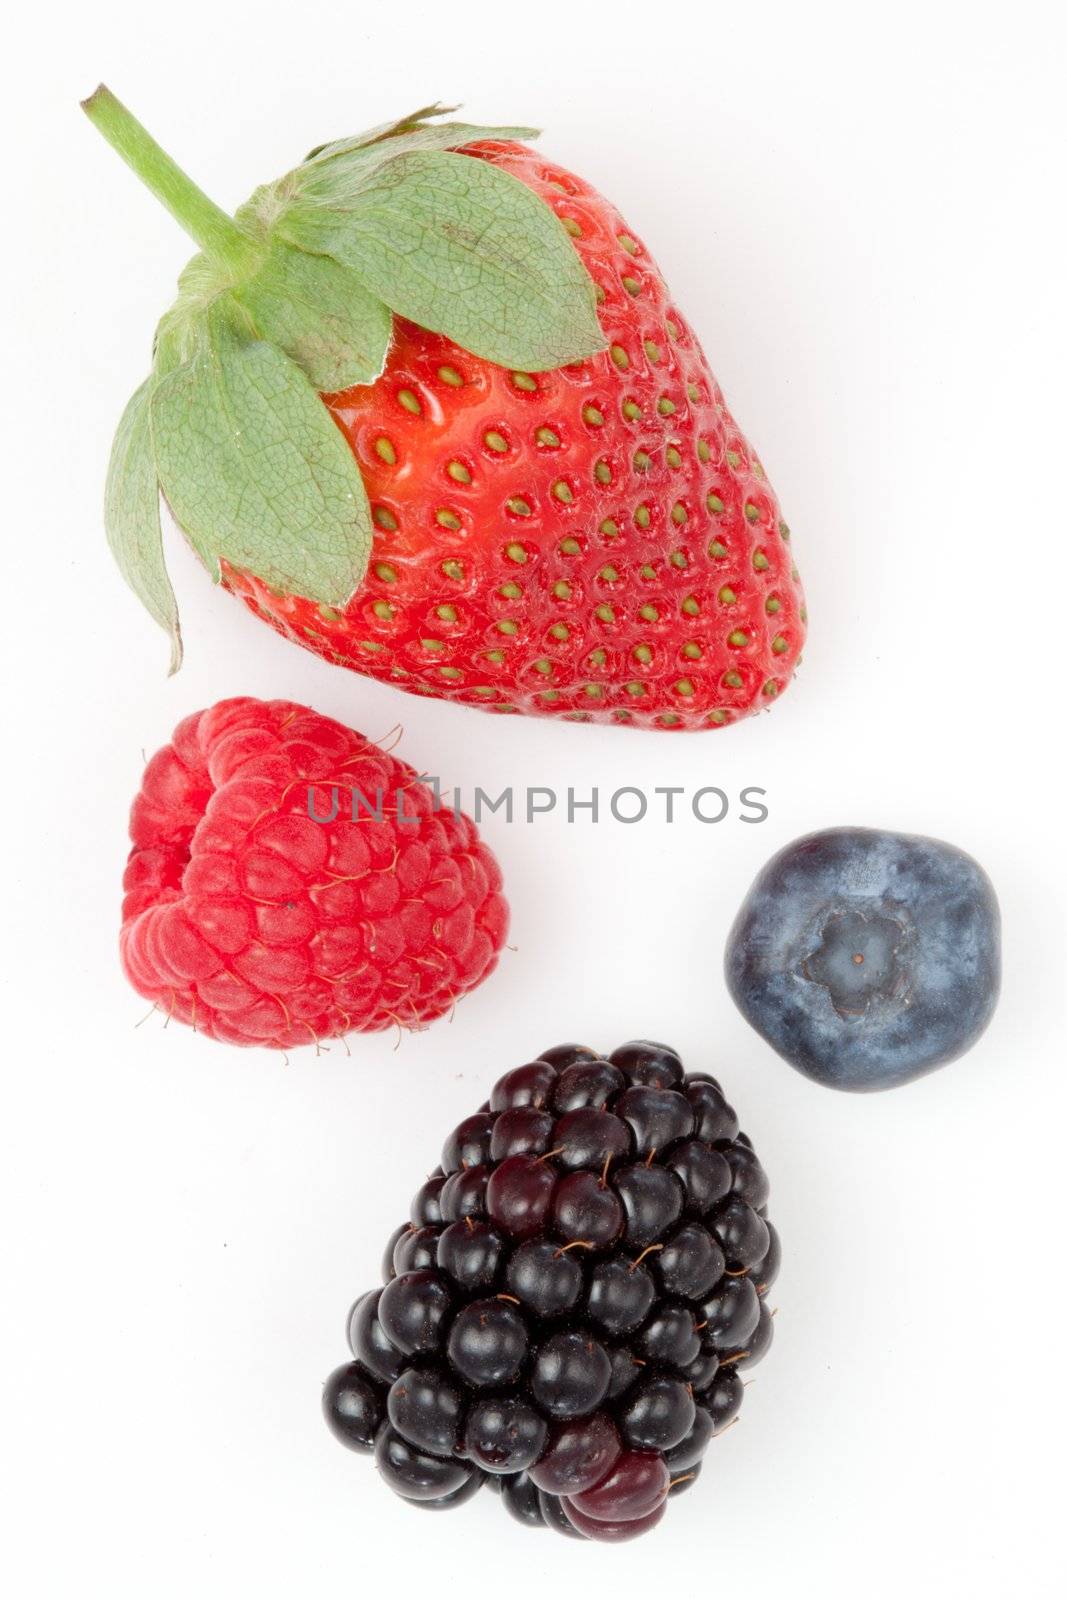 Berries by Wavebreakmedia